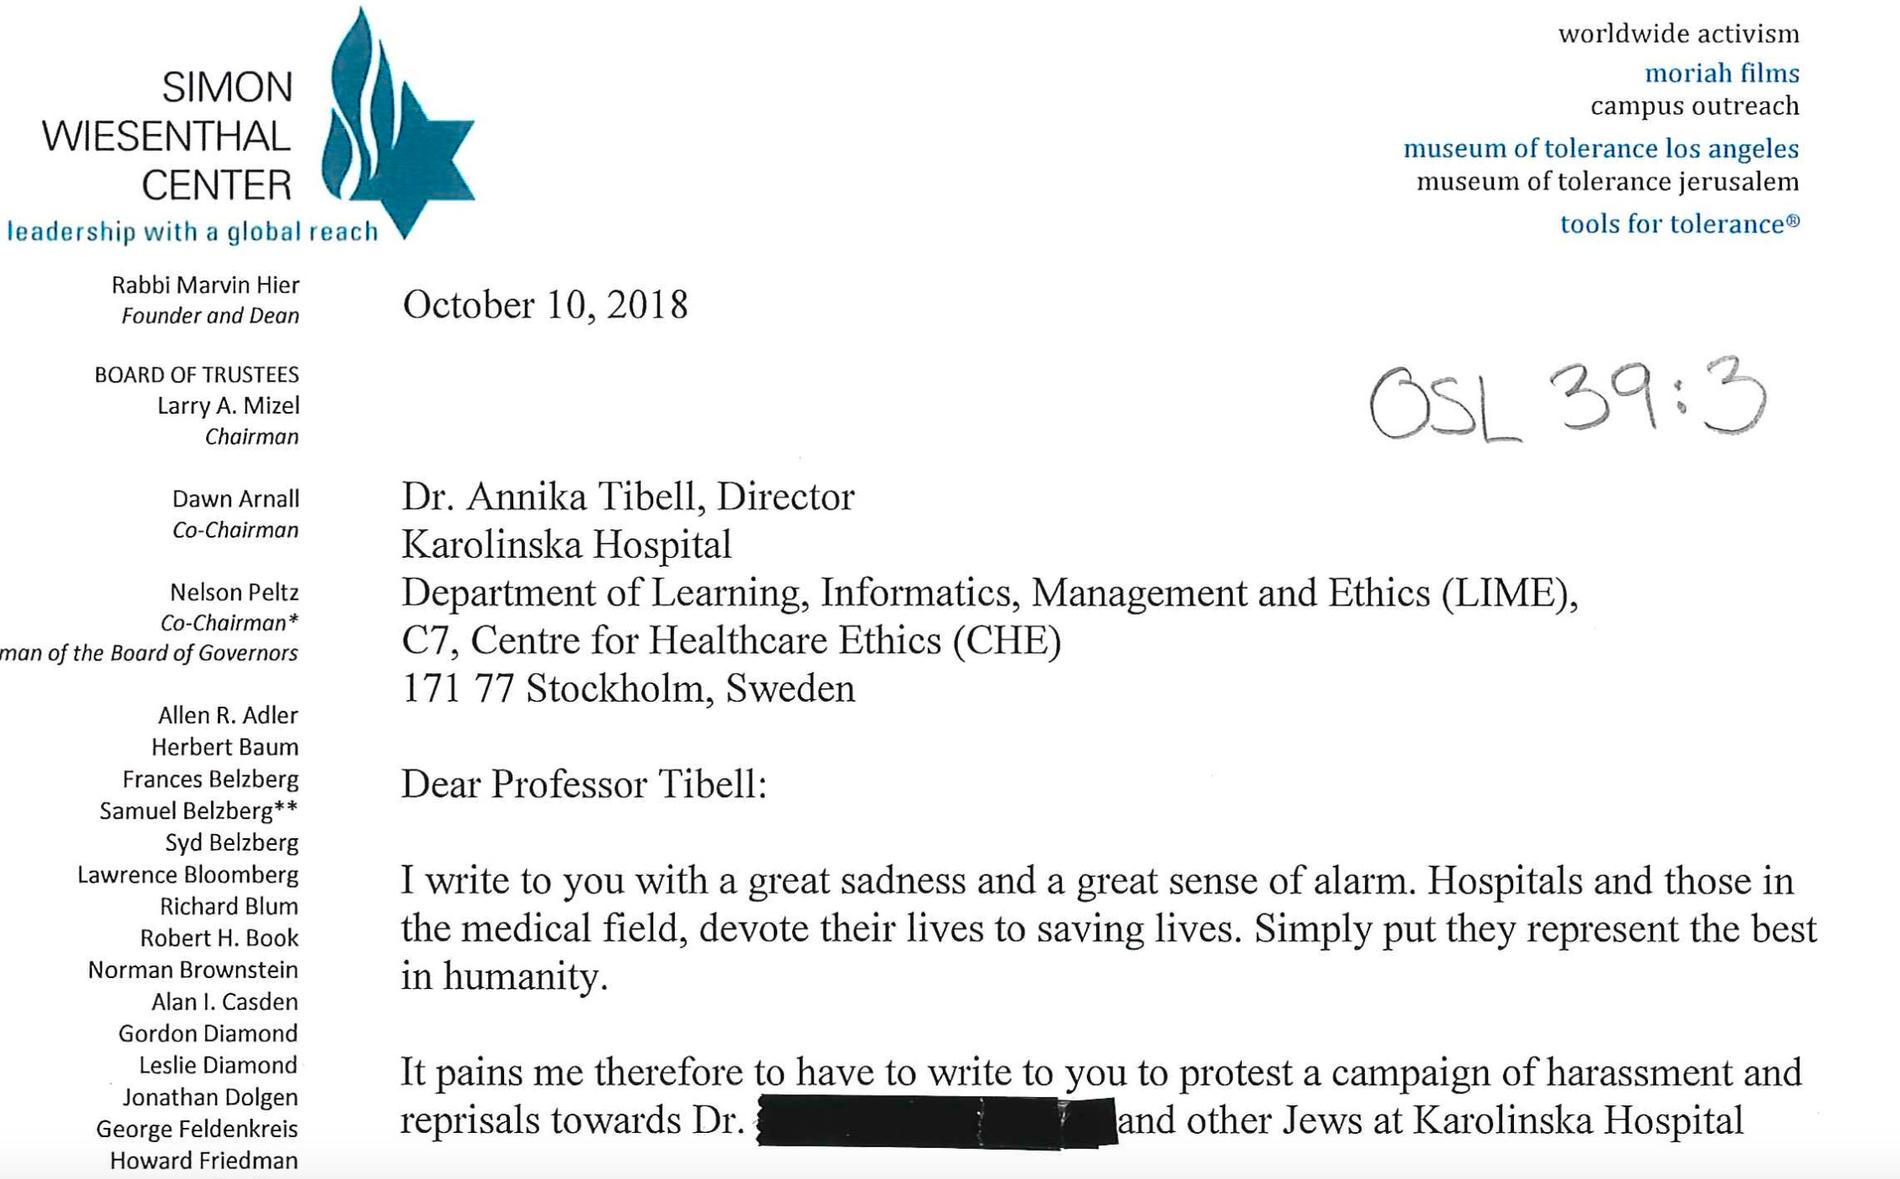 Rabbinen Abraham Cooper på människorättsorganisationen Simon Wiesenthal-centret larmar i ett brev att en överläkare på sjukhuset trakasserar och mobbar judiska läkare. Personen ska också ha spridit antisemitiska bilder i sociala medier.